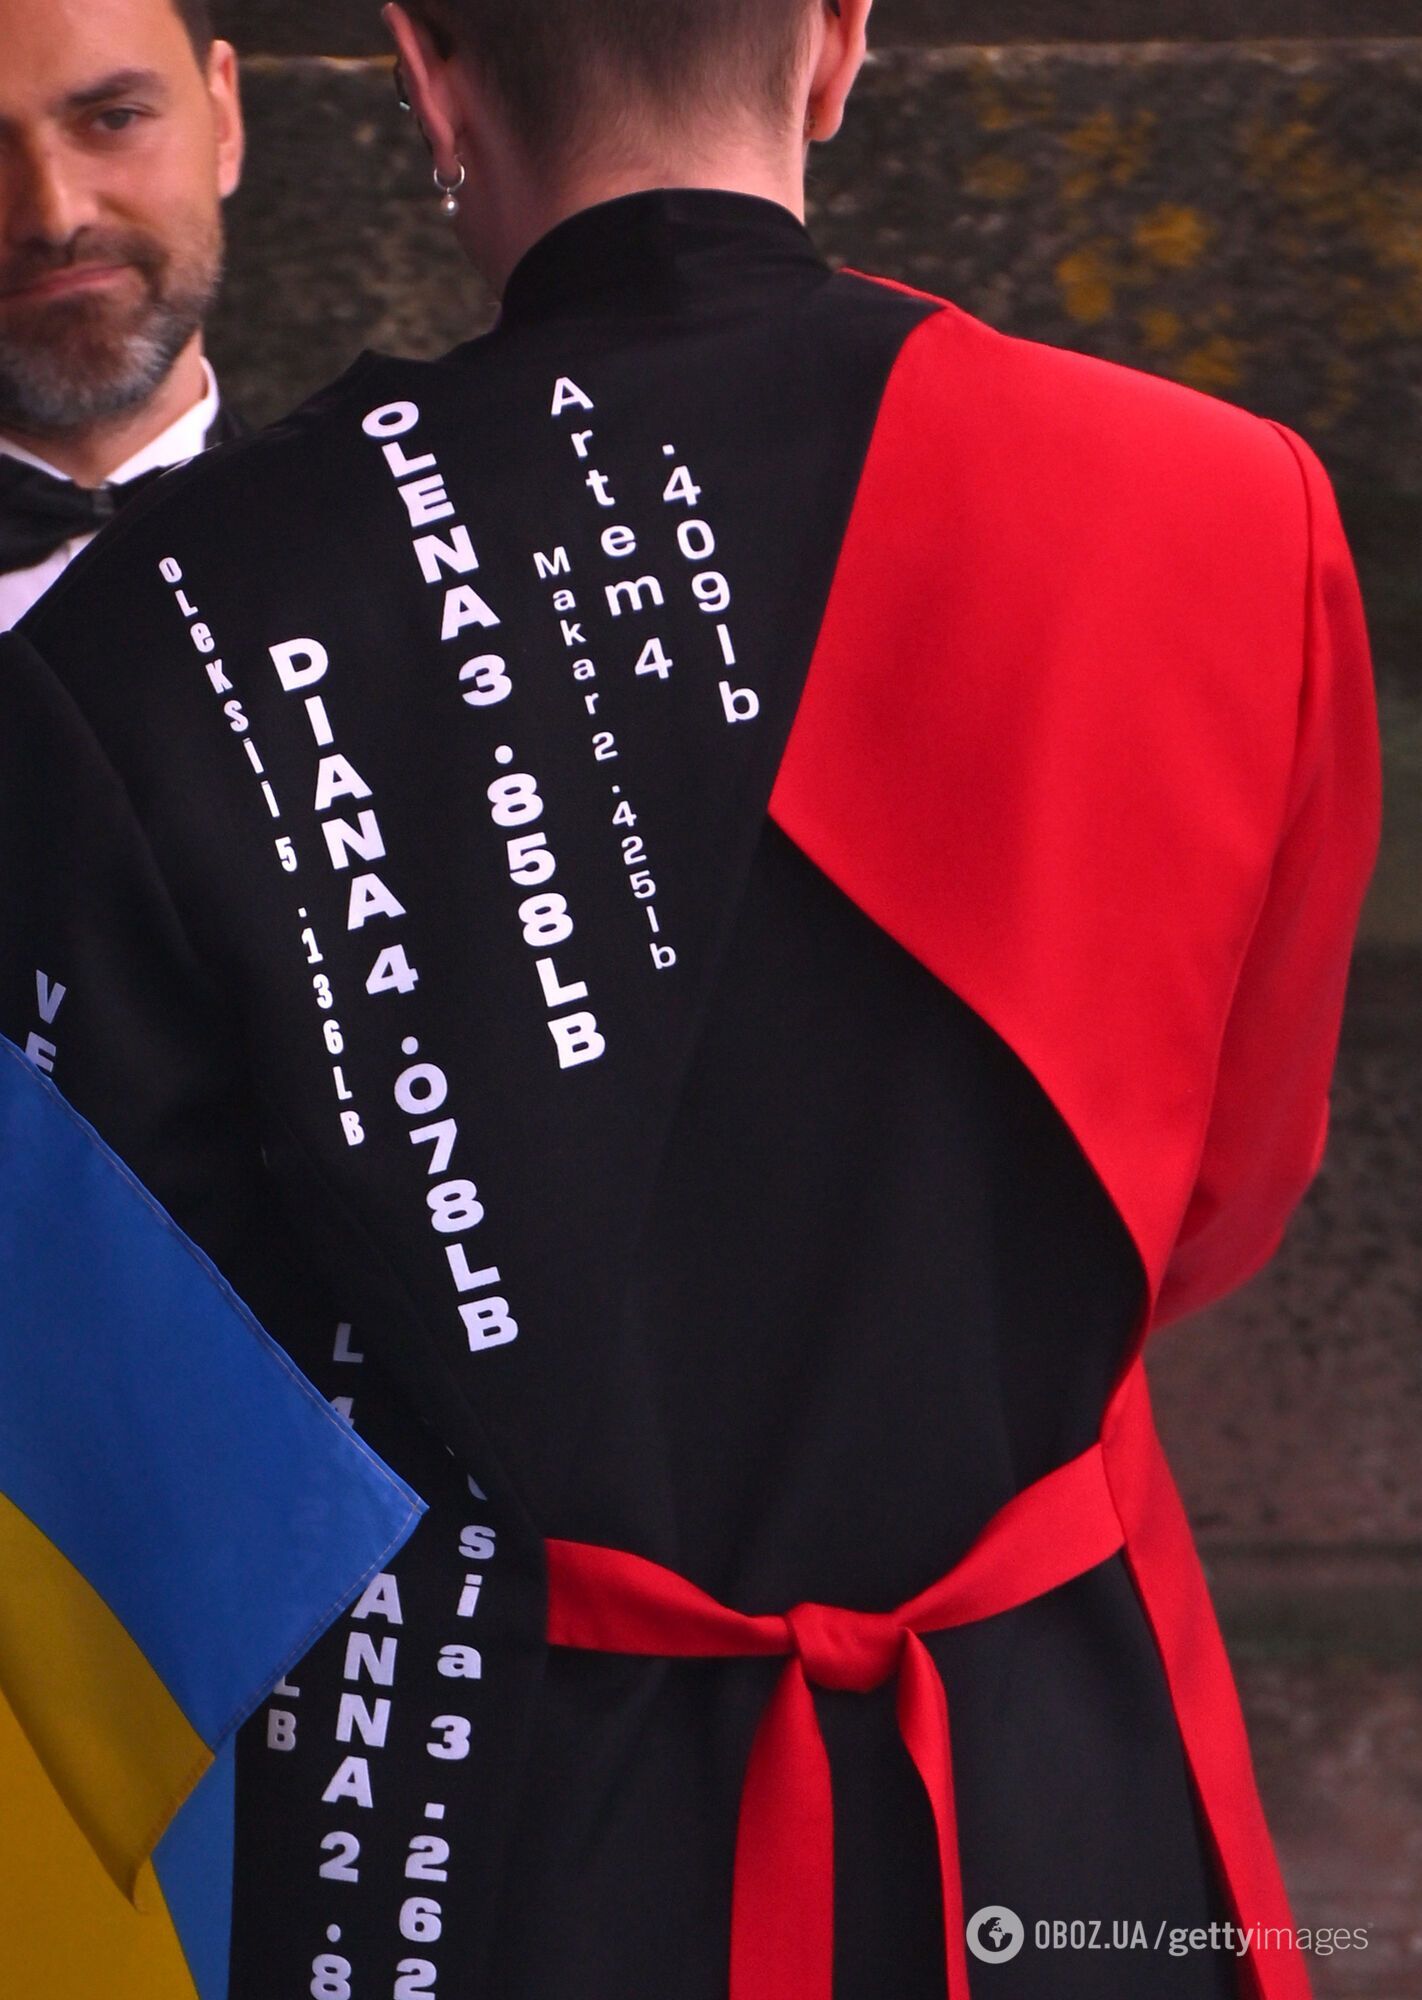 TVORCHI з'явилися на відкритті Євробачення-2023 у костюмах з іменами передчасно народжених за час великої війни дітей. Фото